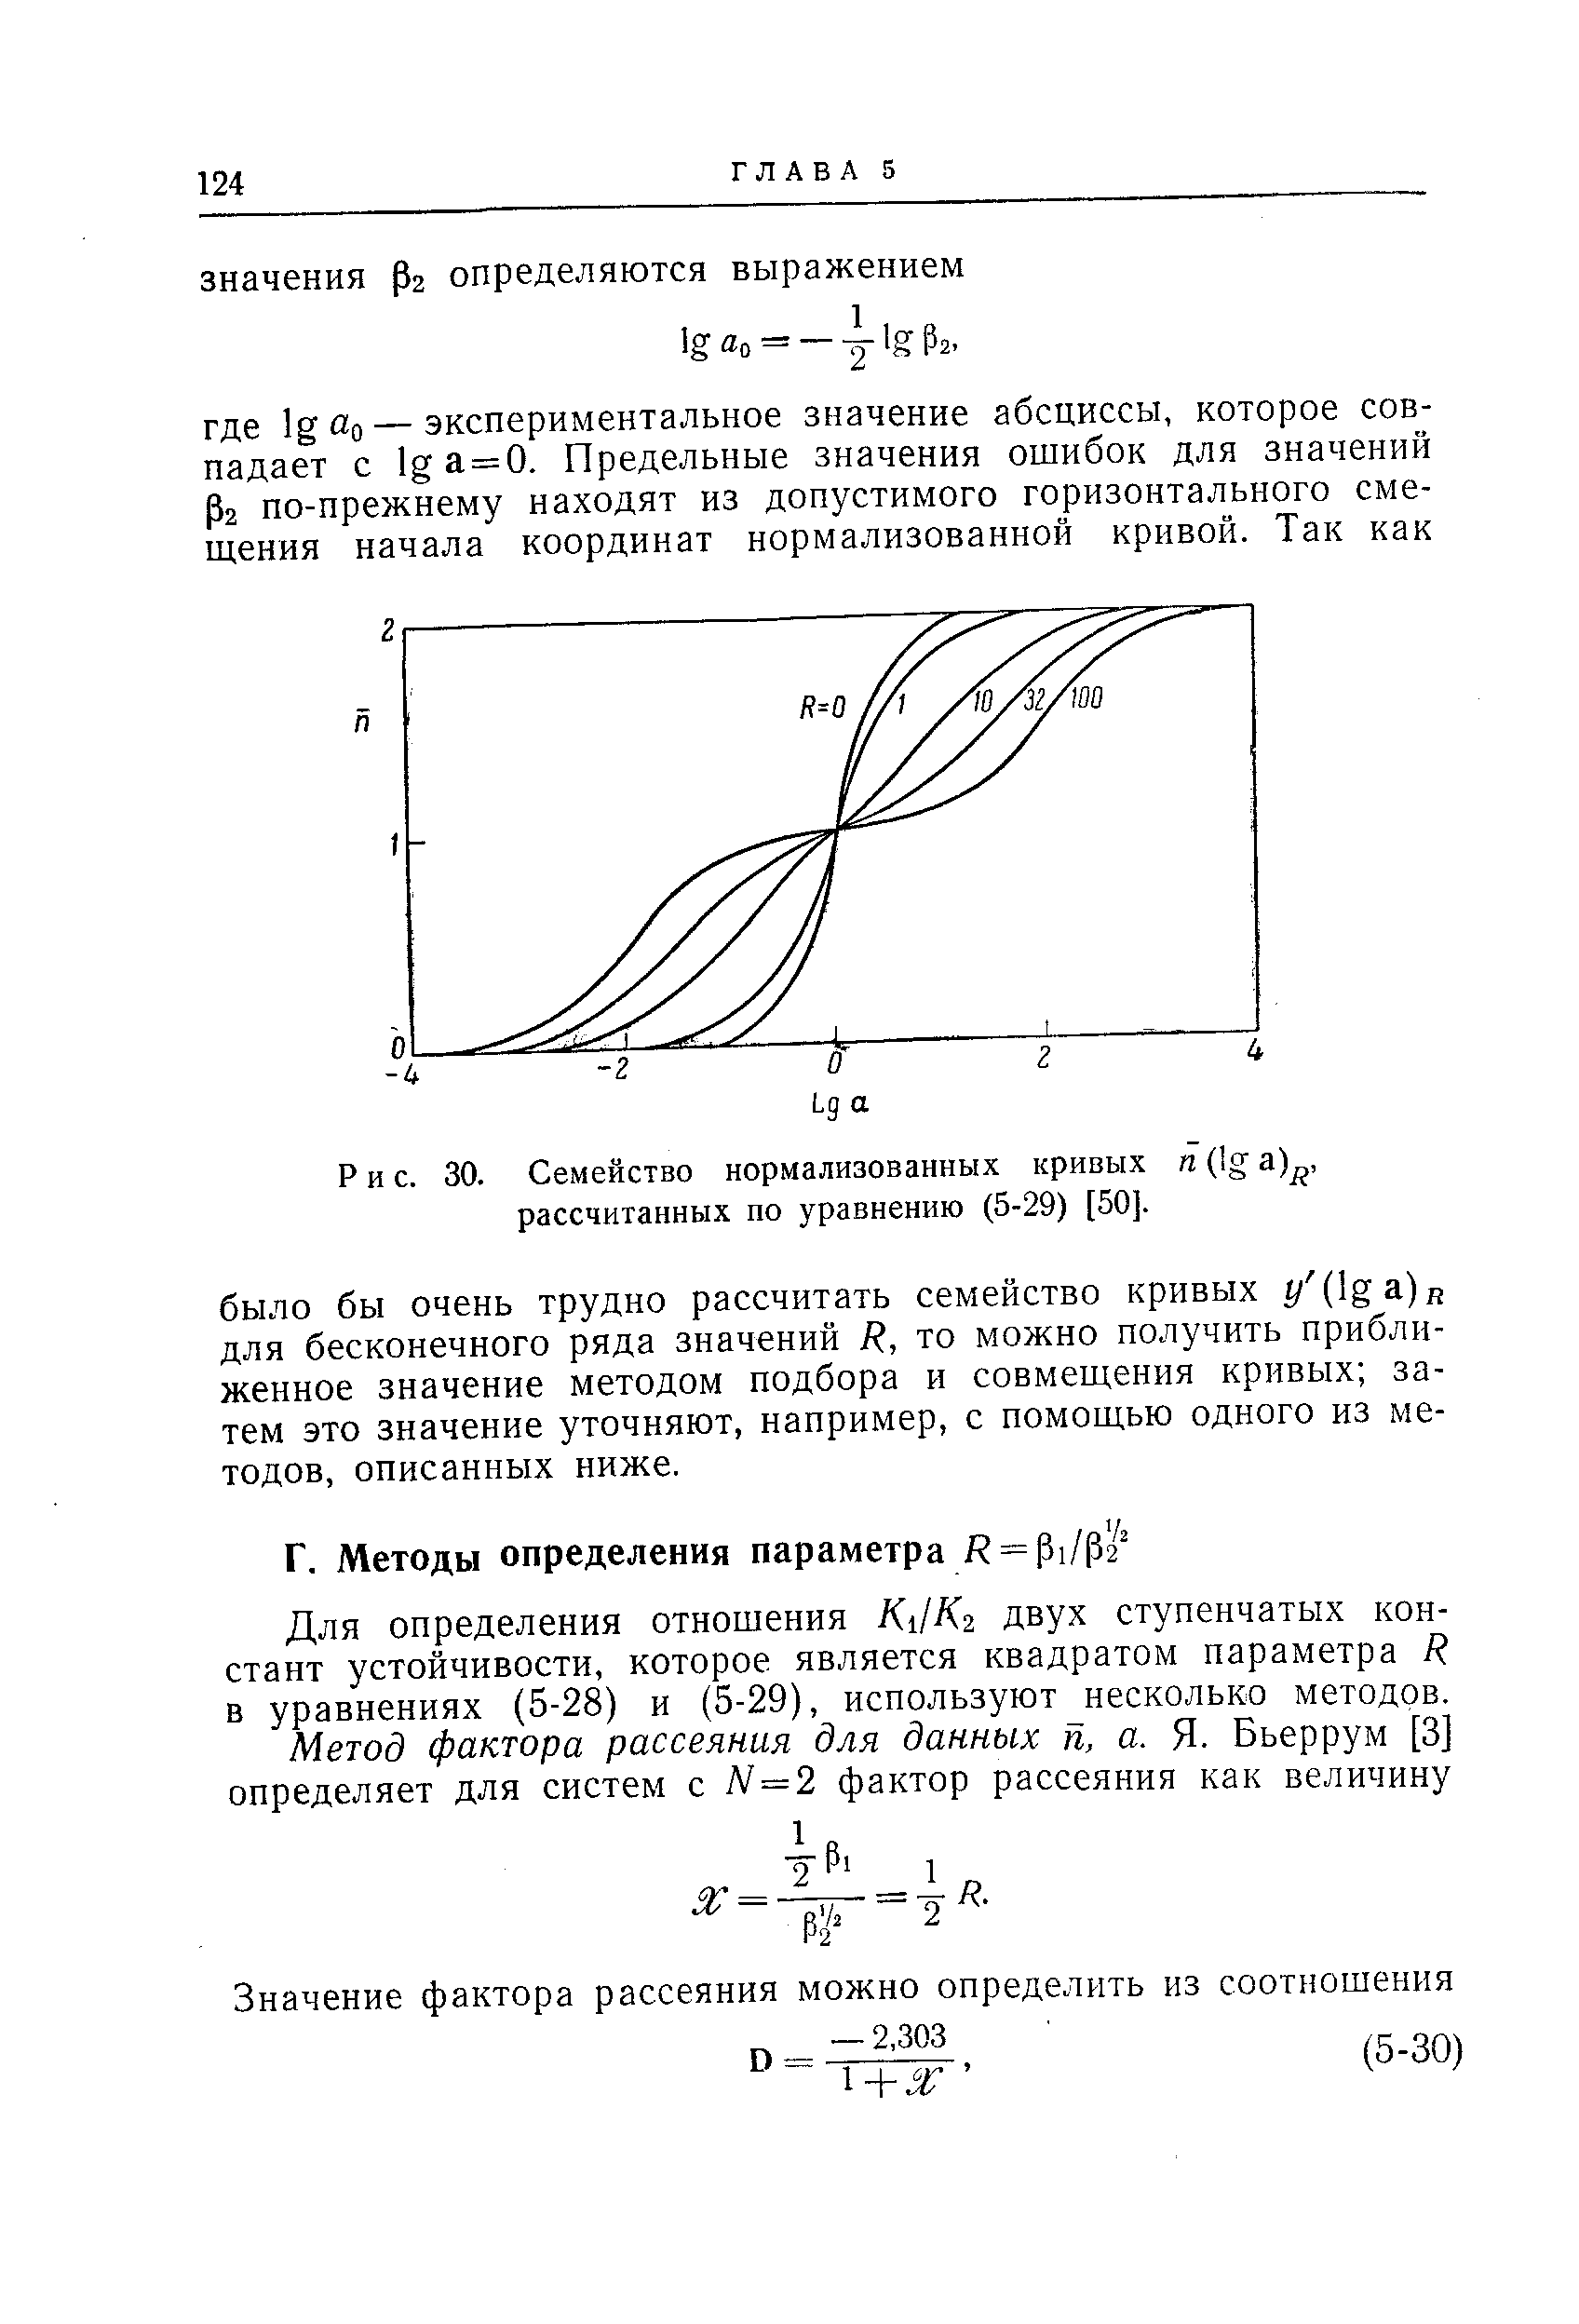 Для определения отношения К Кг двух ступенчатых констант устойчивости, которое является квадратом параметра Я в уравнениях (5-28) и (5-29), используют несколько методов.